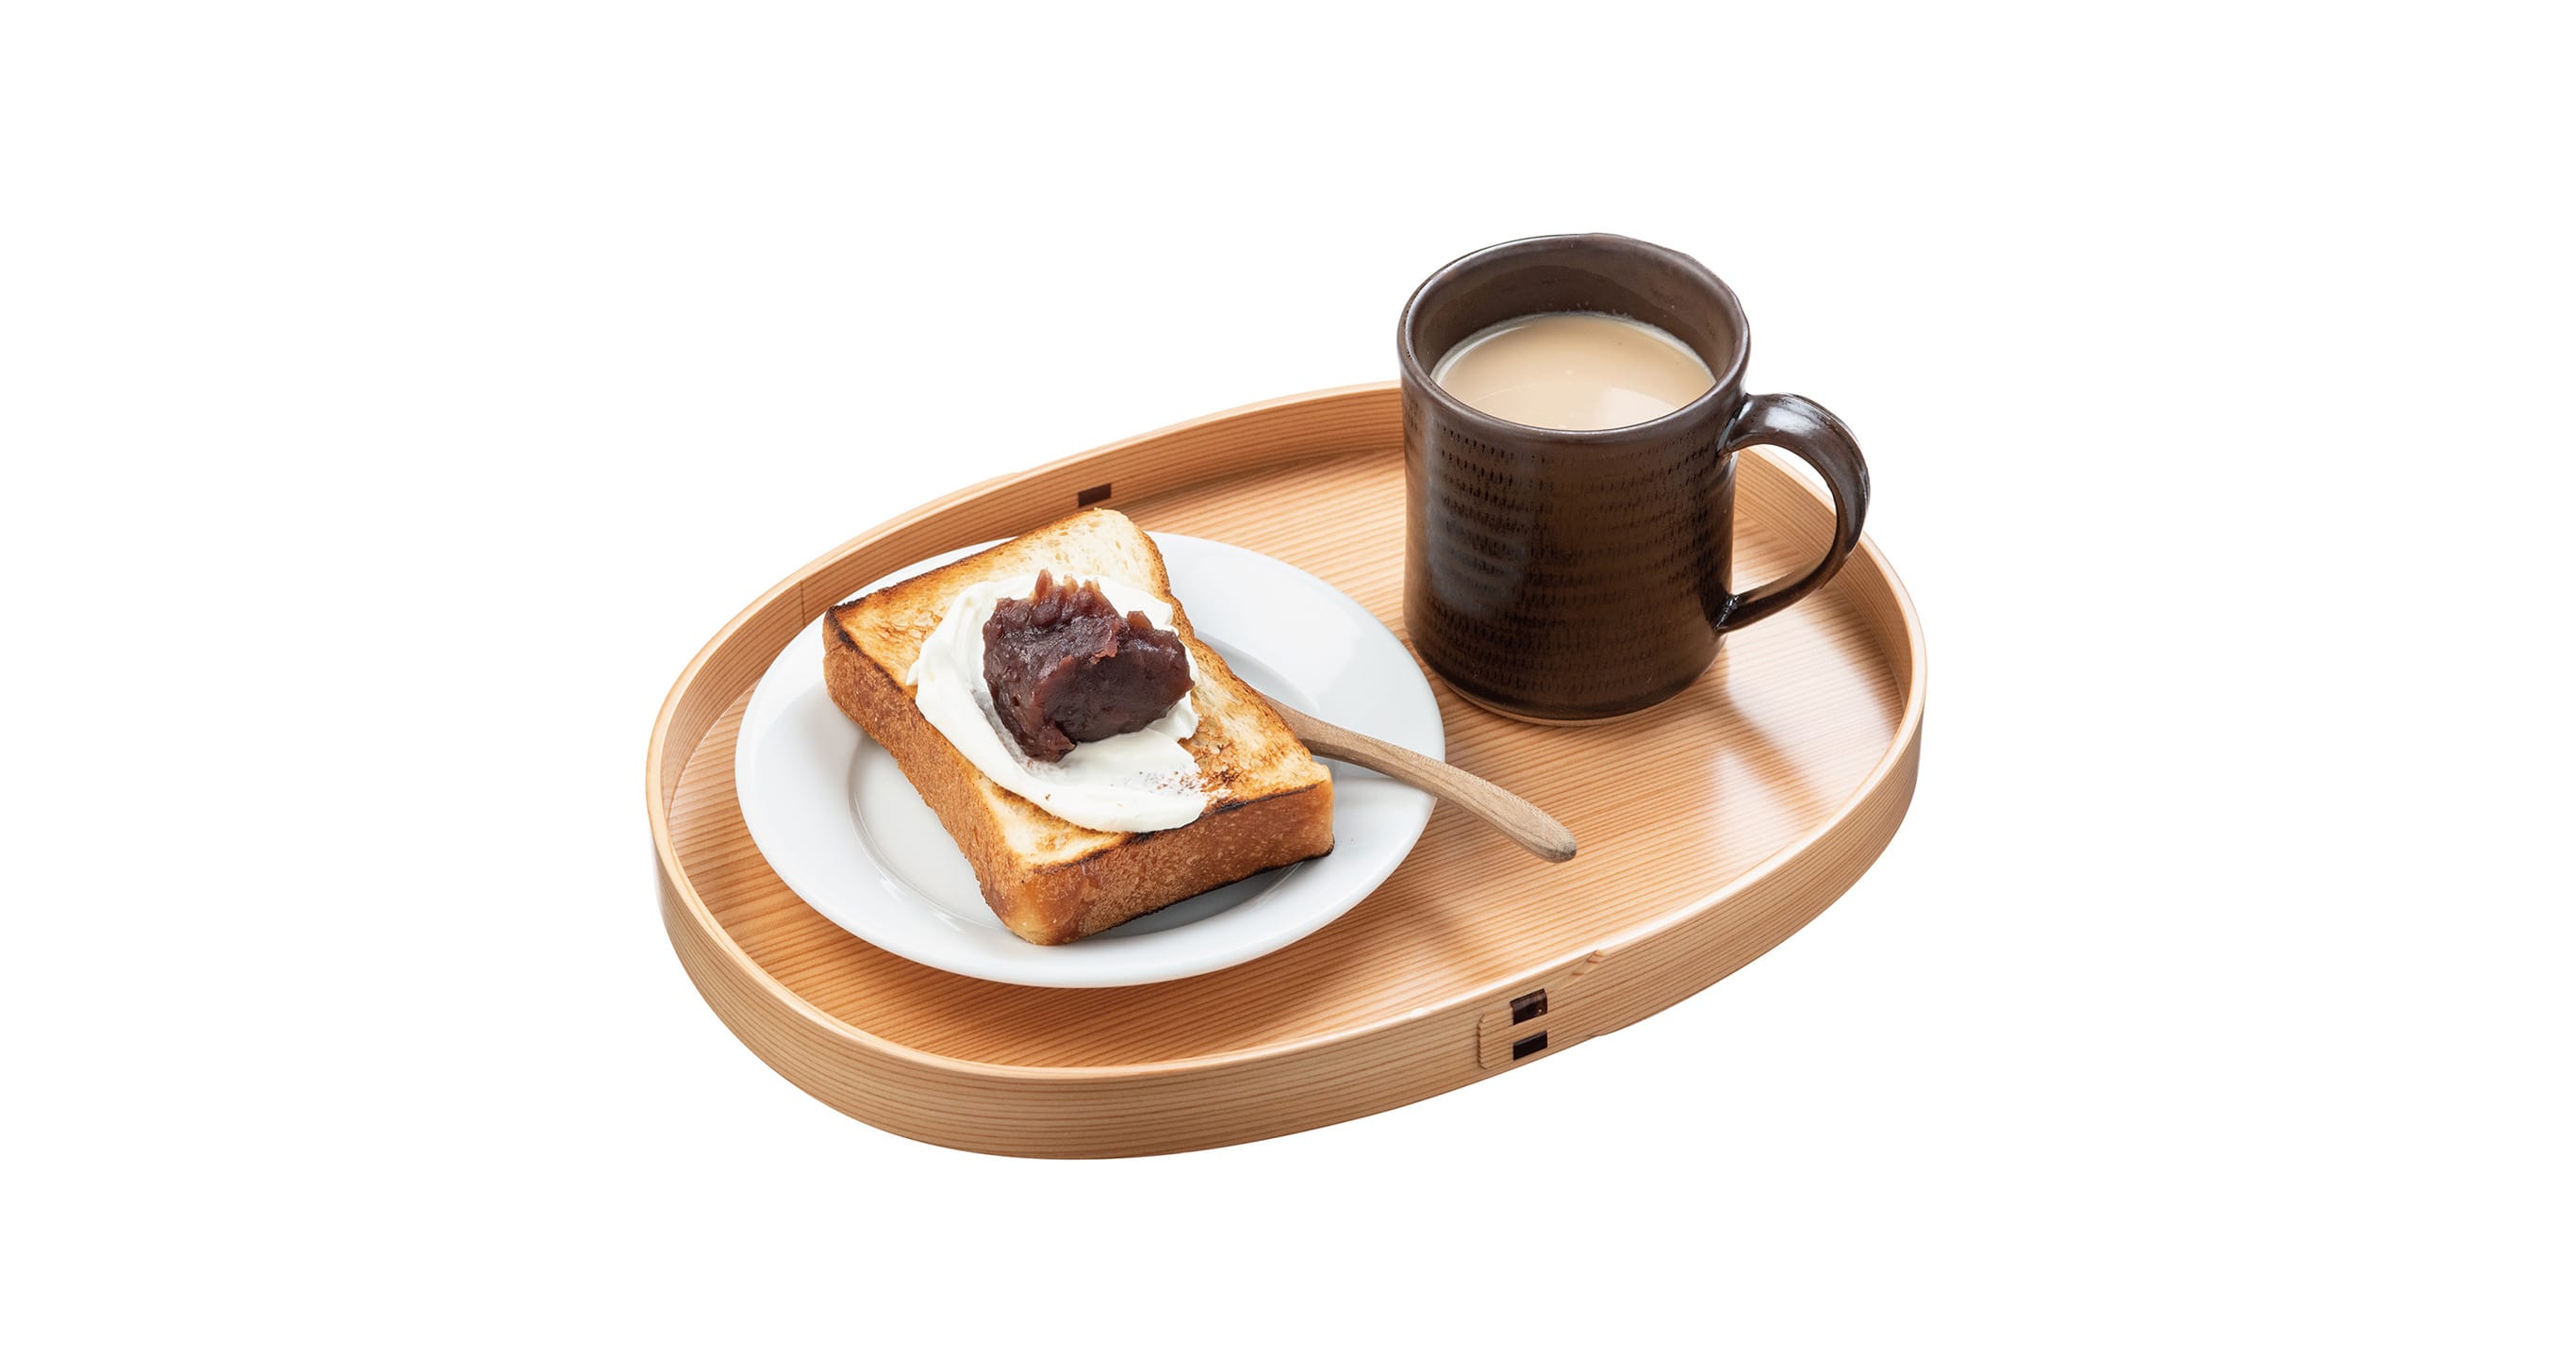 小判形の盆に１人前のあんこトーストと飲み物をのせて朝食やおやつに。